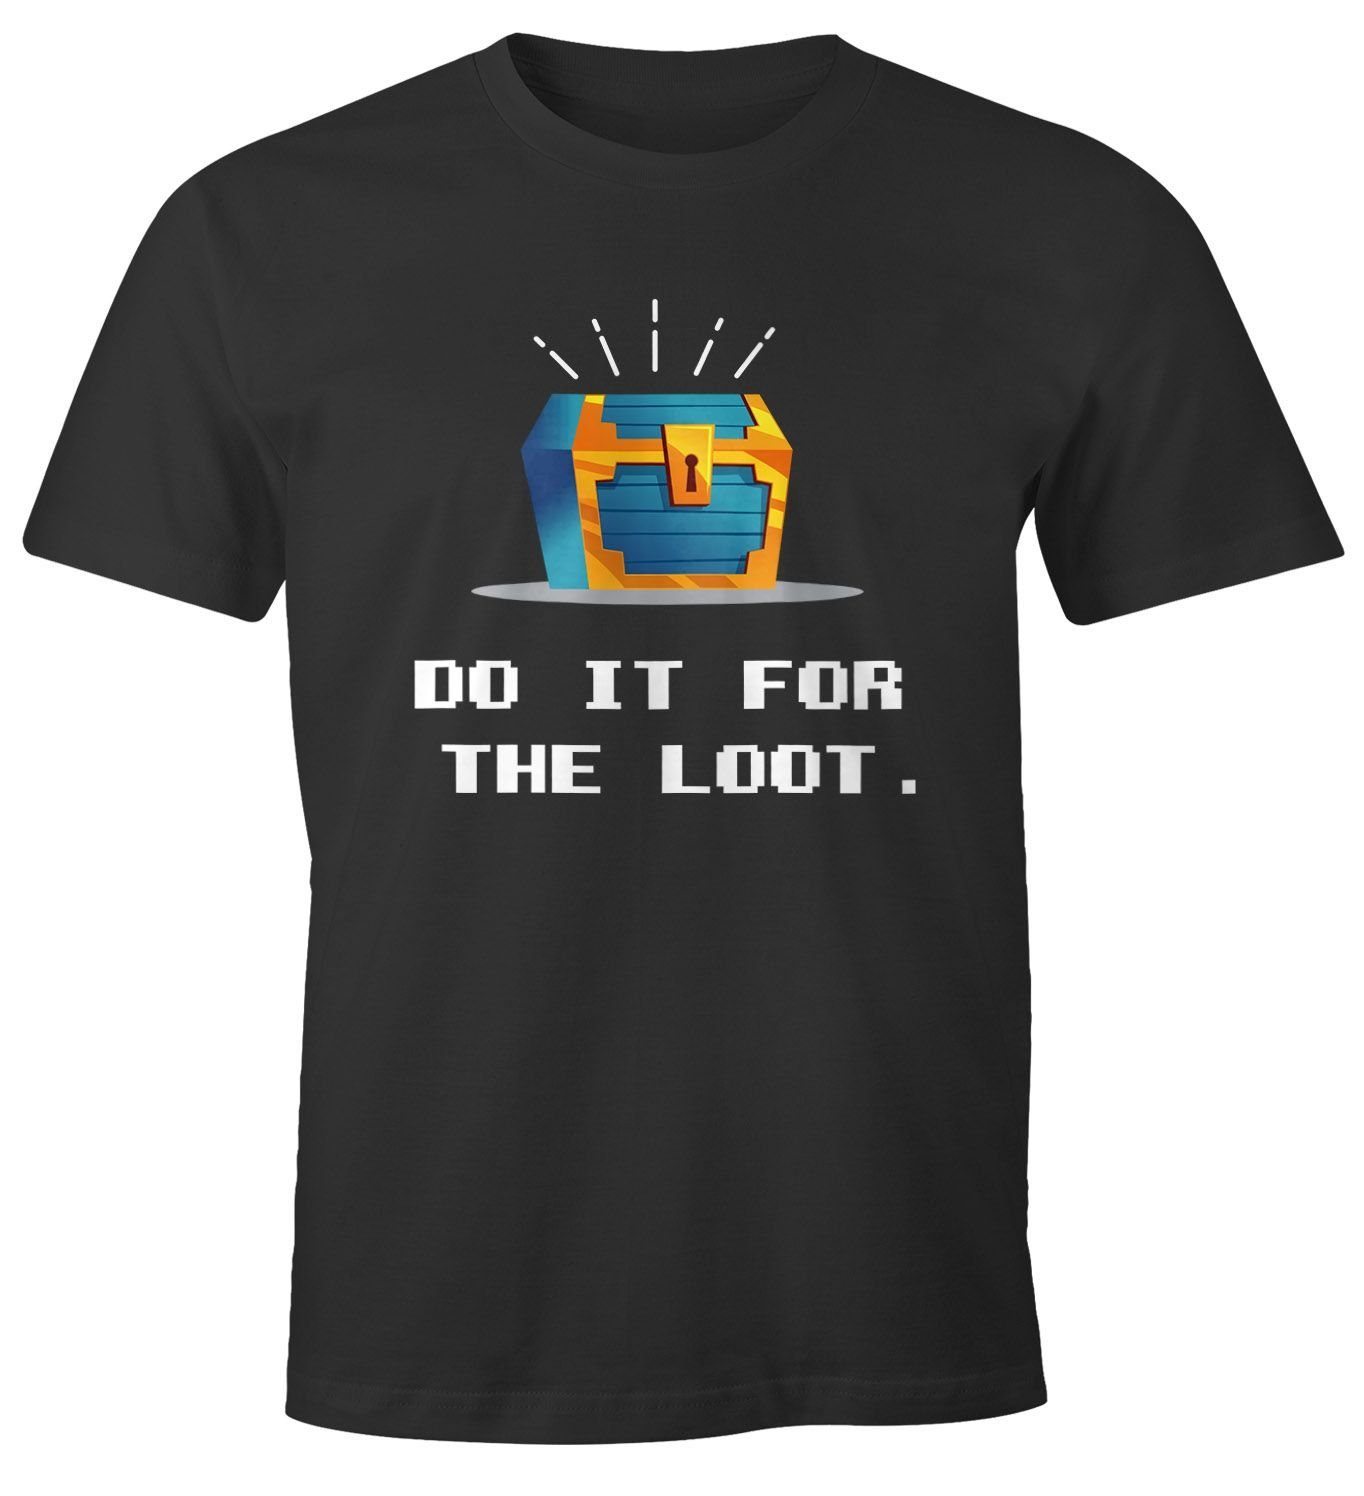 MoonWorks Print-Shirt Herren T-Shirt Gaming Spruch do it for the loot und Motiv Schatztruhe Zocker Nerds Fun-Shirt lustig Moonworks® mit Print schwarz